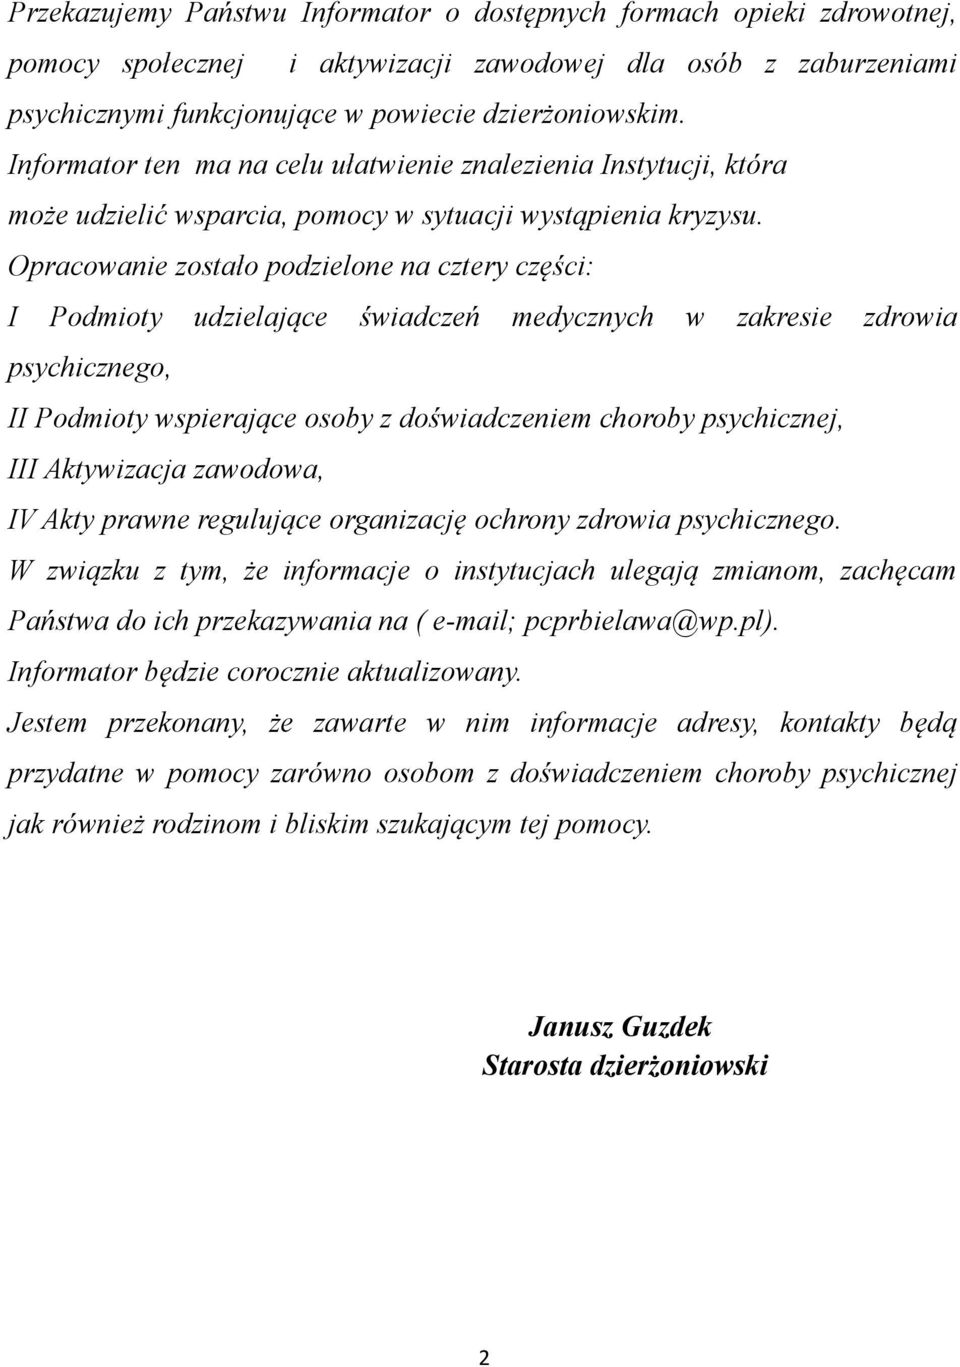 Opracowanie zostało podzielone na cztery części: I Podmioty udzielające świadczeń medycznych w zakresie zdrowia psychicznego, II Podmioty wspierające osoby z doświadczeniem choroby psychicznej, III